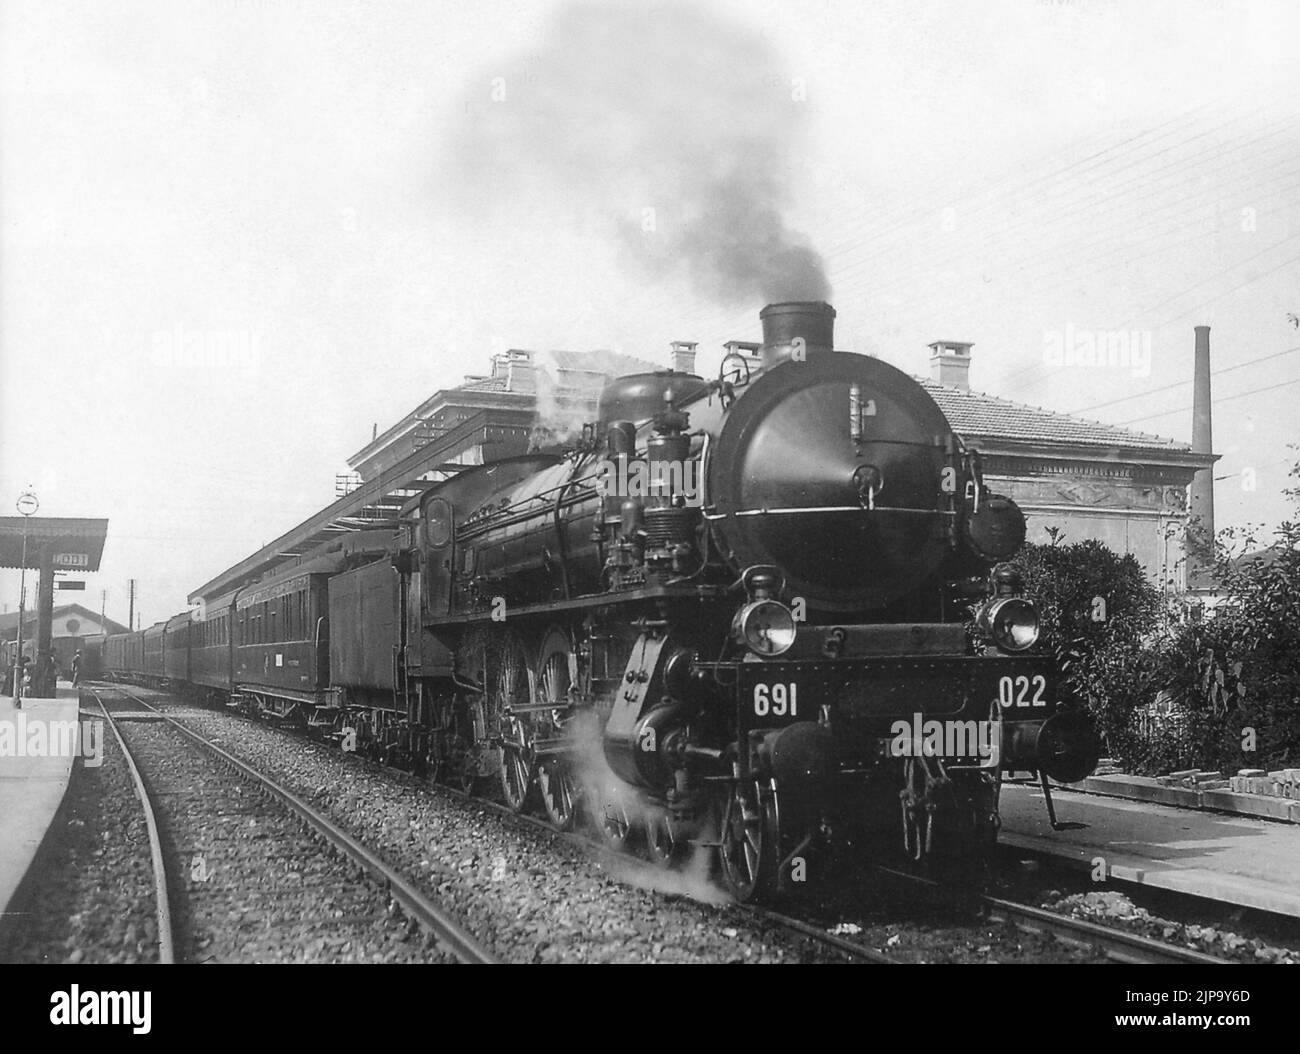 Treni e Tram - Locomotiva Breda Gr. 691-022 in transito a Lodi negli anni'30 conservato presso il Museo Nazionale della scienza e della tecnica di Milano Stock Photo